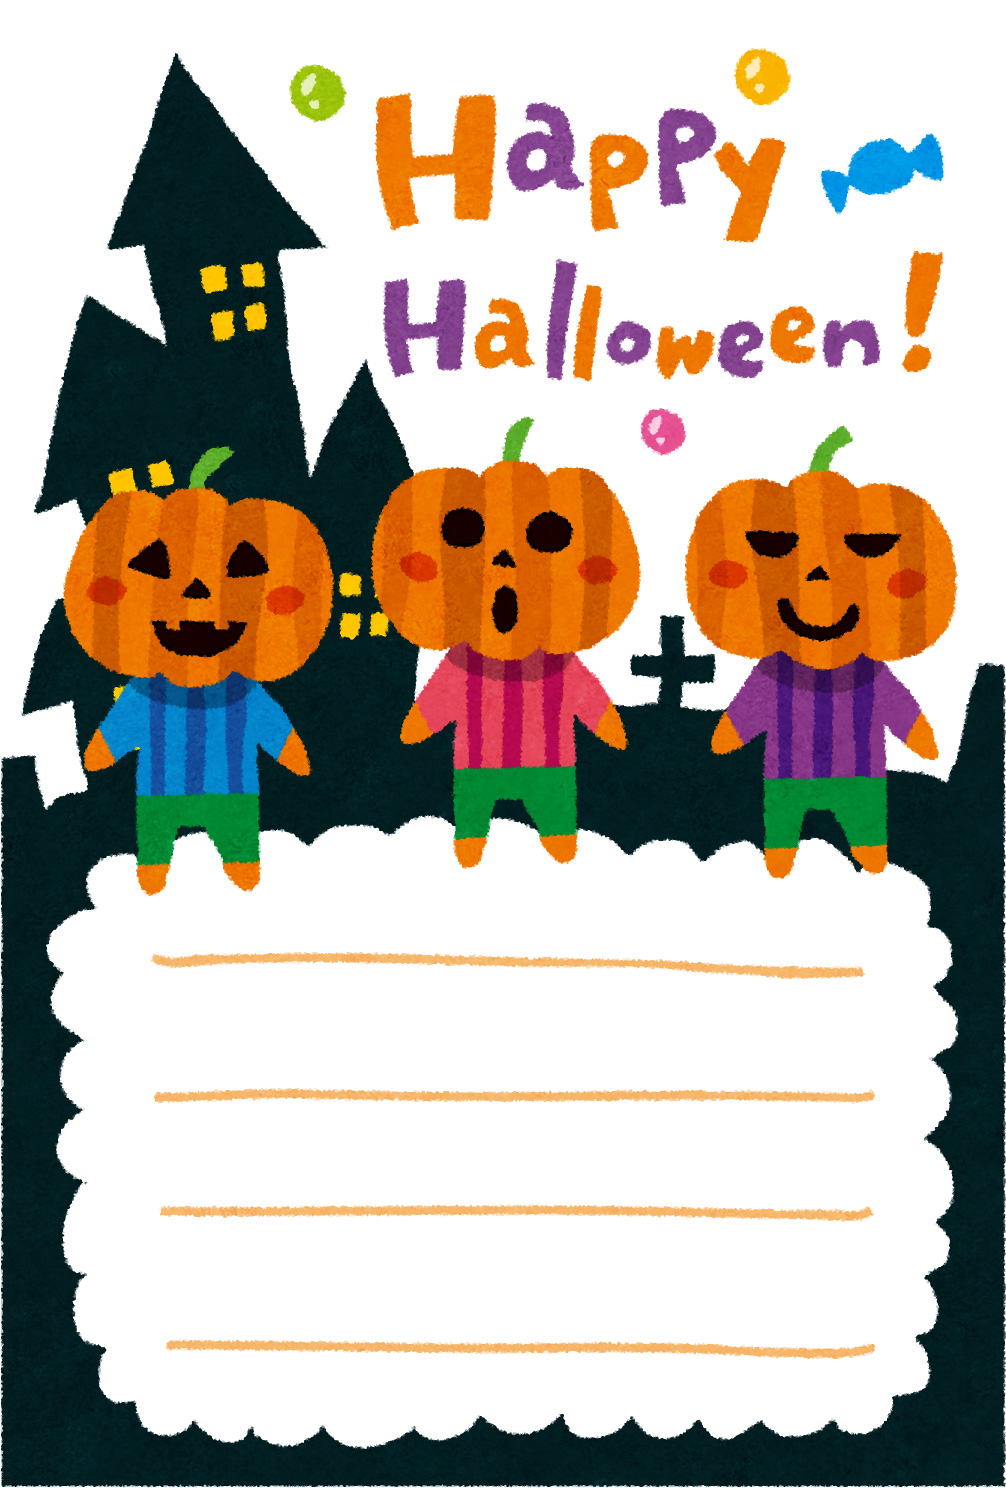 ハロウィンのグリーティングカードのテンプレート かぼちゃ3兄弟 かわいいフリー素材集 いらすとや